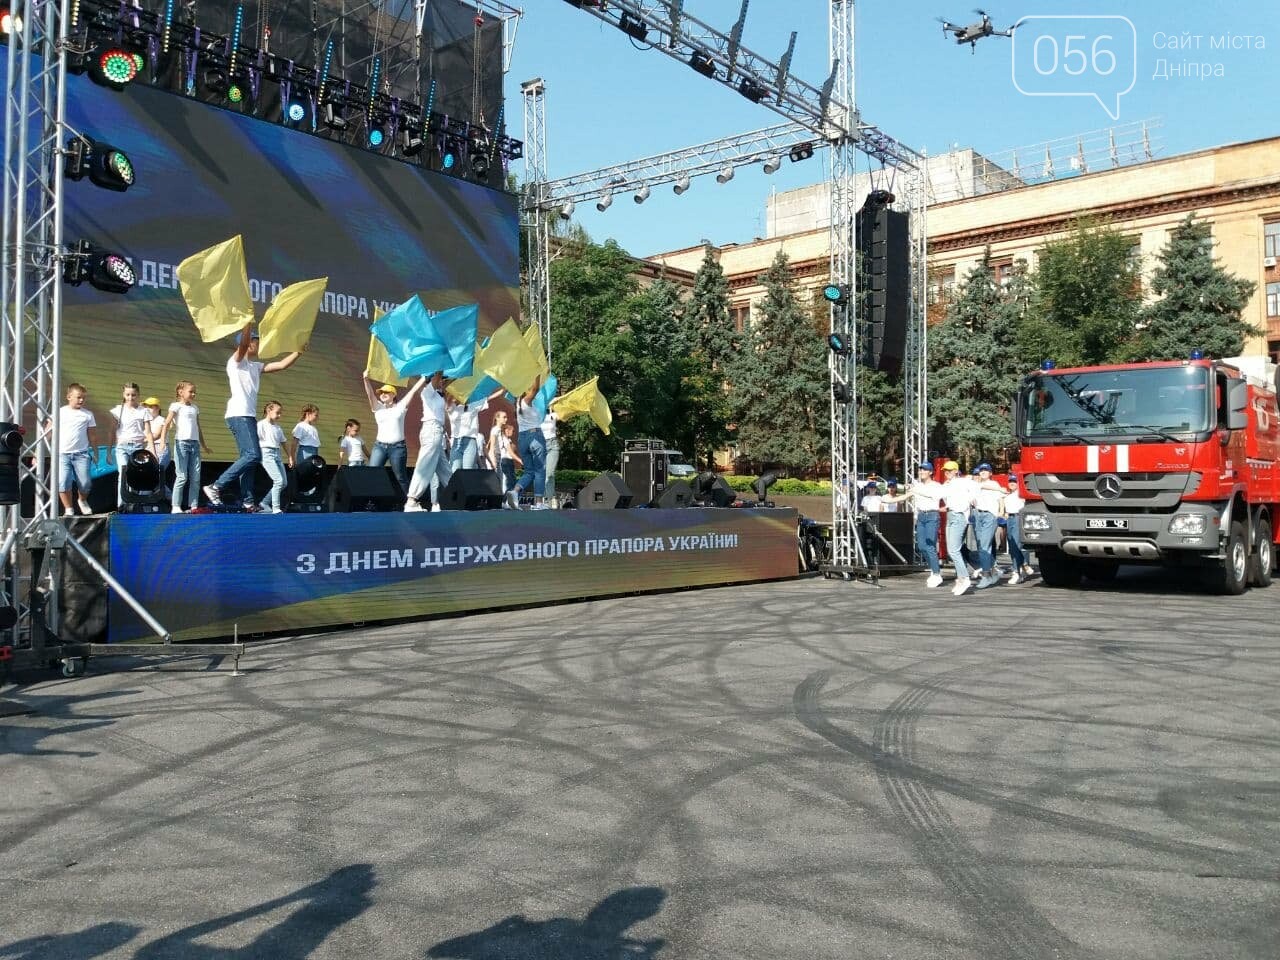 В Днепре две пожарные автолестницы подняли самый большой флаг Украины, - ФОТО, ВИДЕО, фото-3